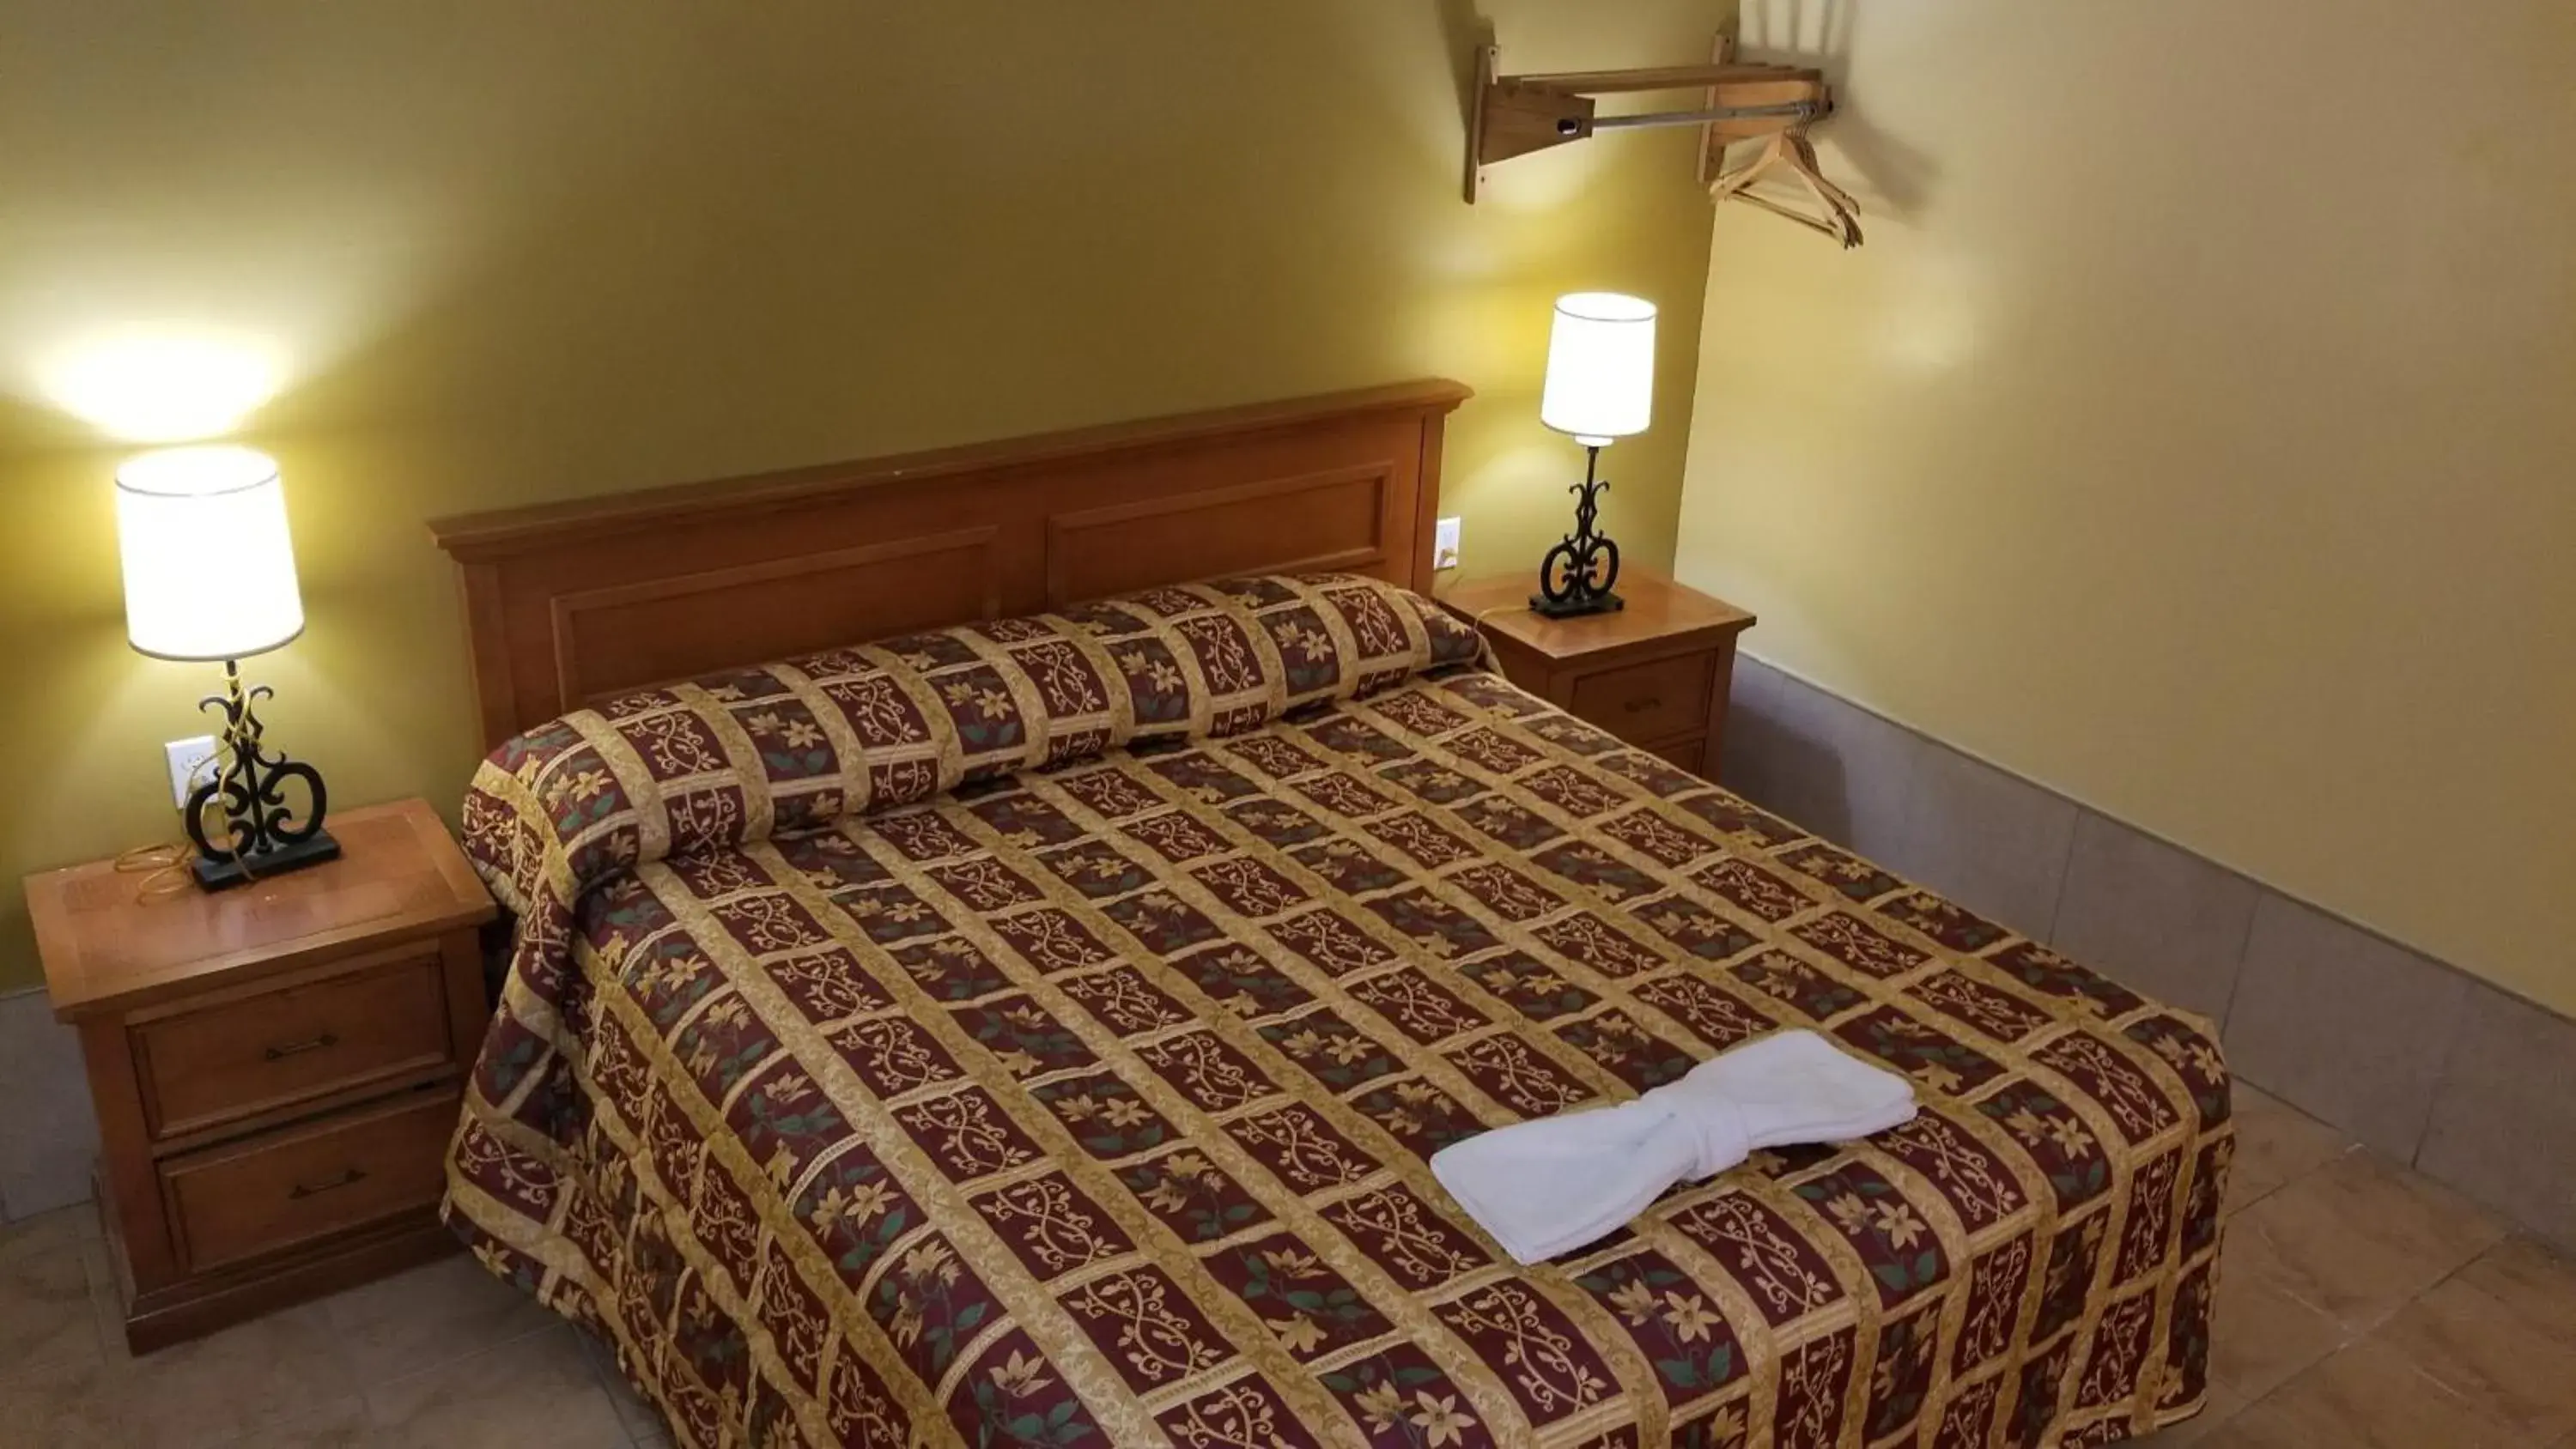 Bed in Luxury Inn